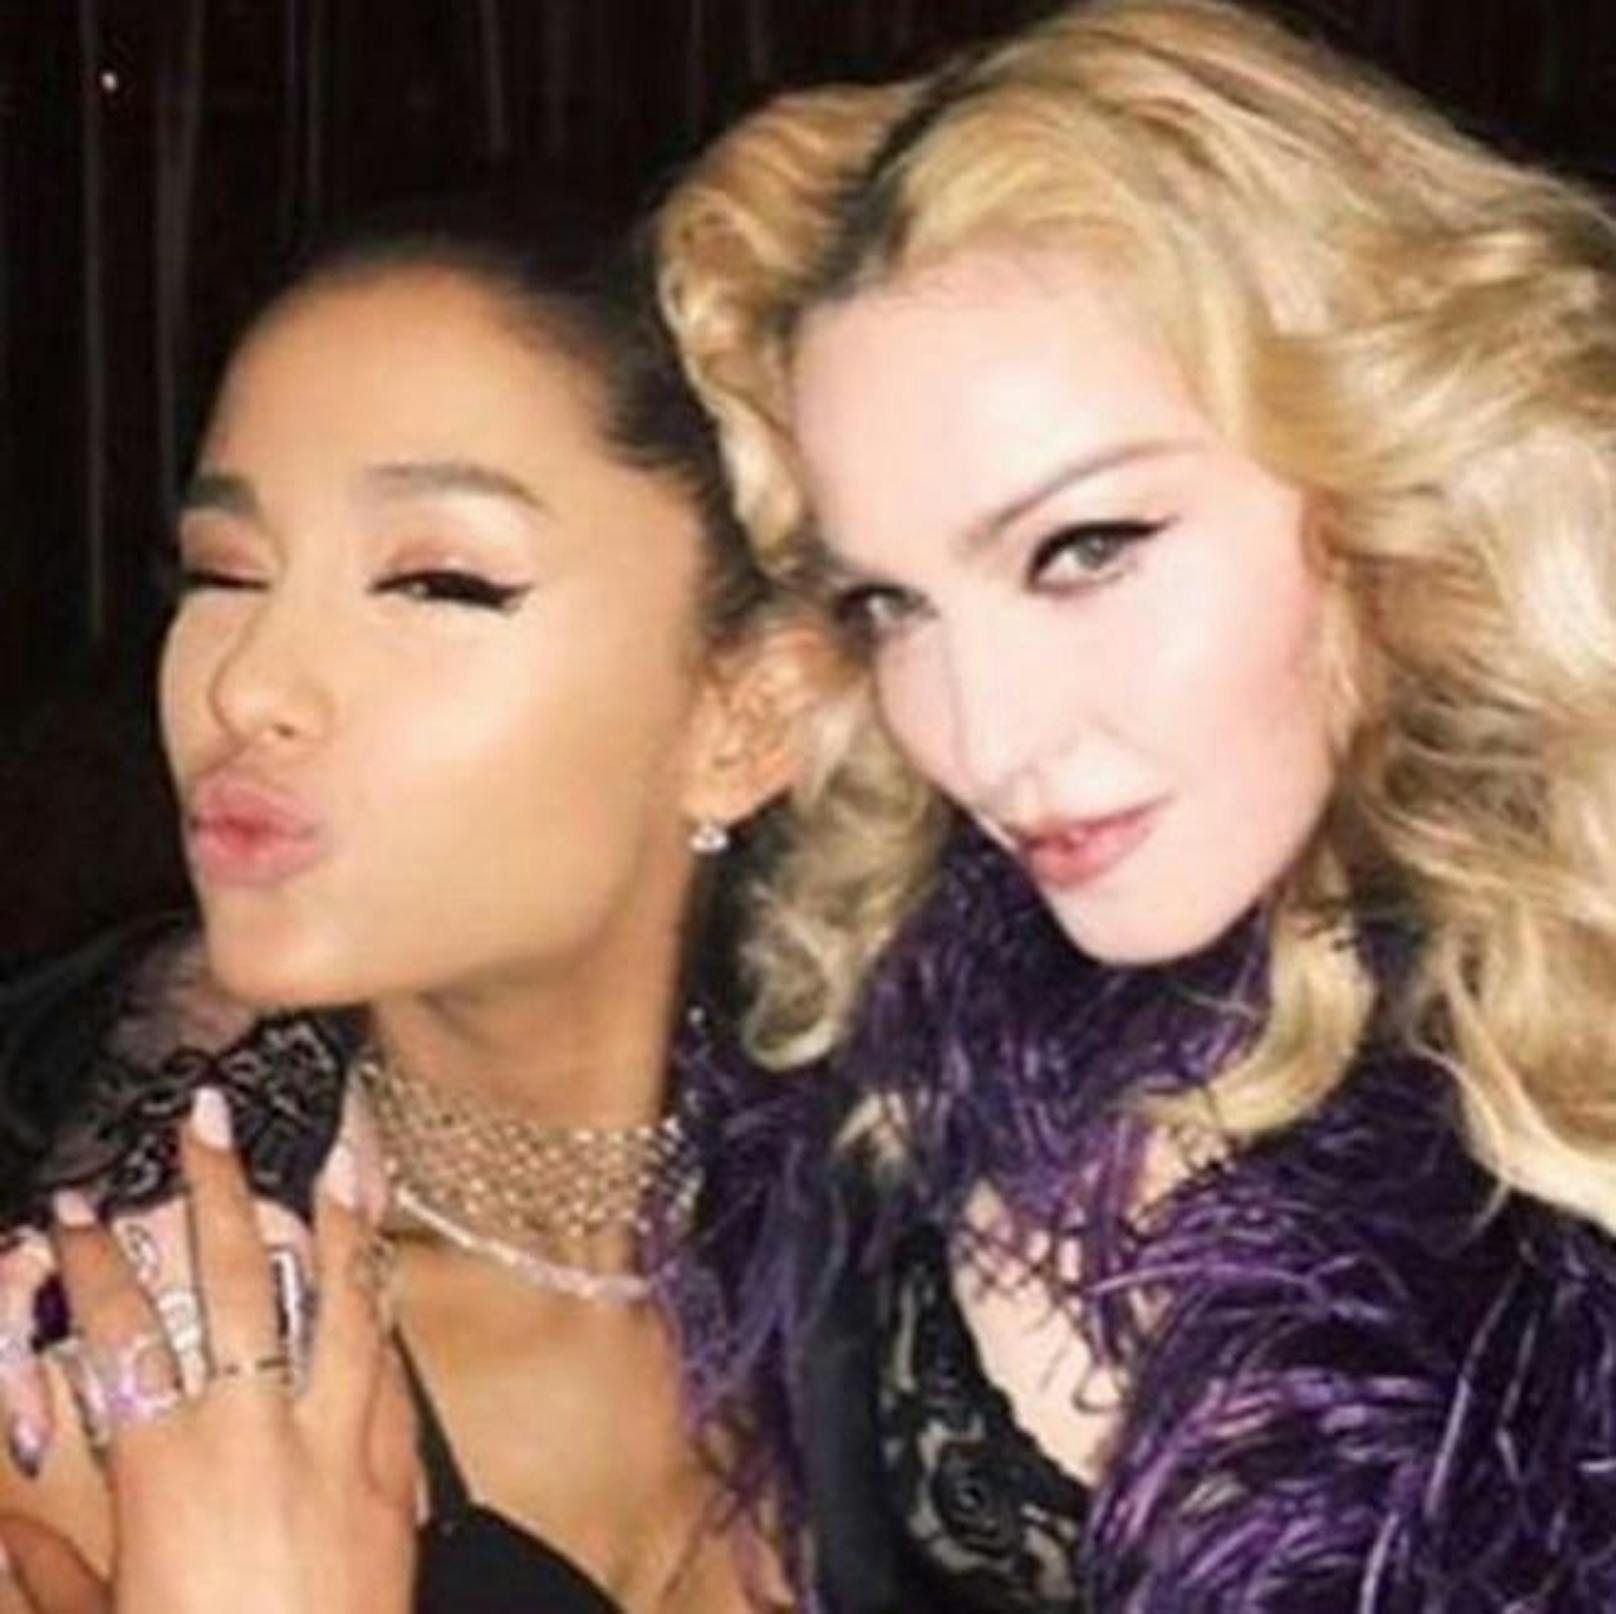 24.05.2017: Madonna teilte ein Selfie von sich und Ariana Grande. Dazu schreibt die Sängerin: "Gott sei Dank, dass meine Freundin ok ist. Lasst uns alle für die unschuldigen Opfer, die nicht ok sind, beten. Für deren Familien und für Manchester."